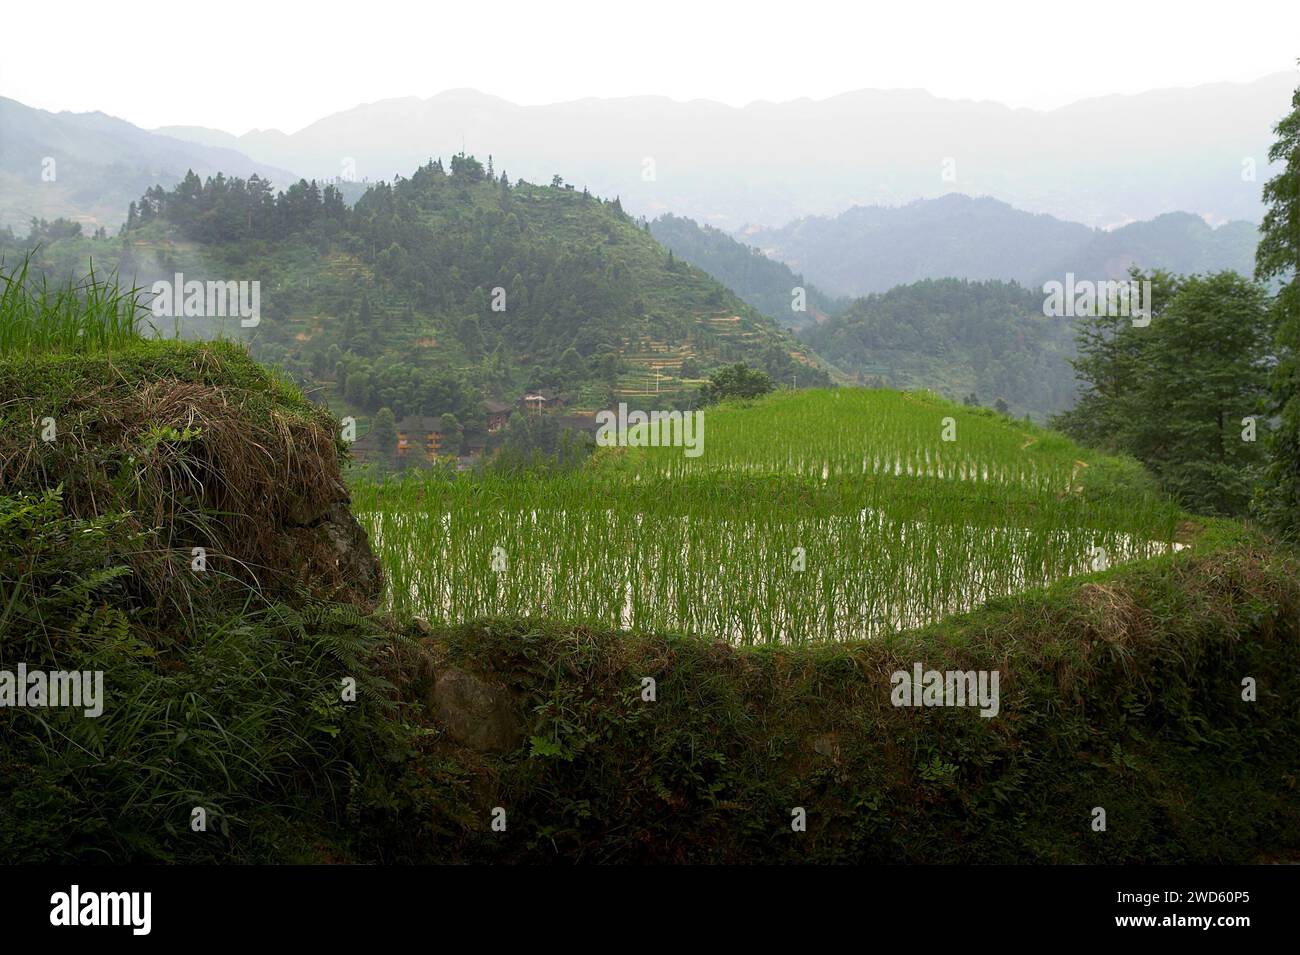 龙胜镇 (龙胜县) 中國 Longsheng Rice Terraces, Dazhai Longji Ping'an Zhuang, China; Oryza sativa L.; rice seedlings on the background of mountains Stock Photo